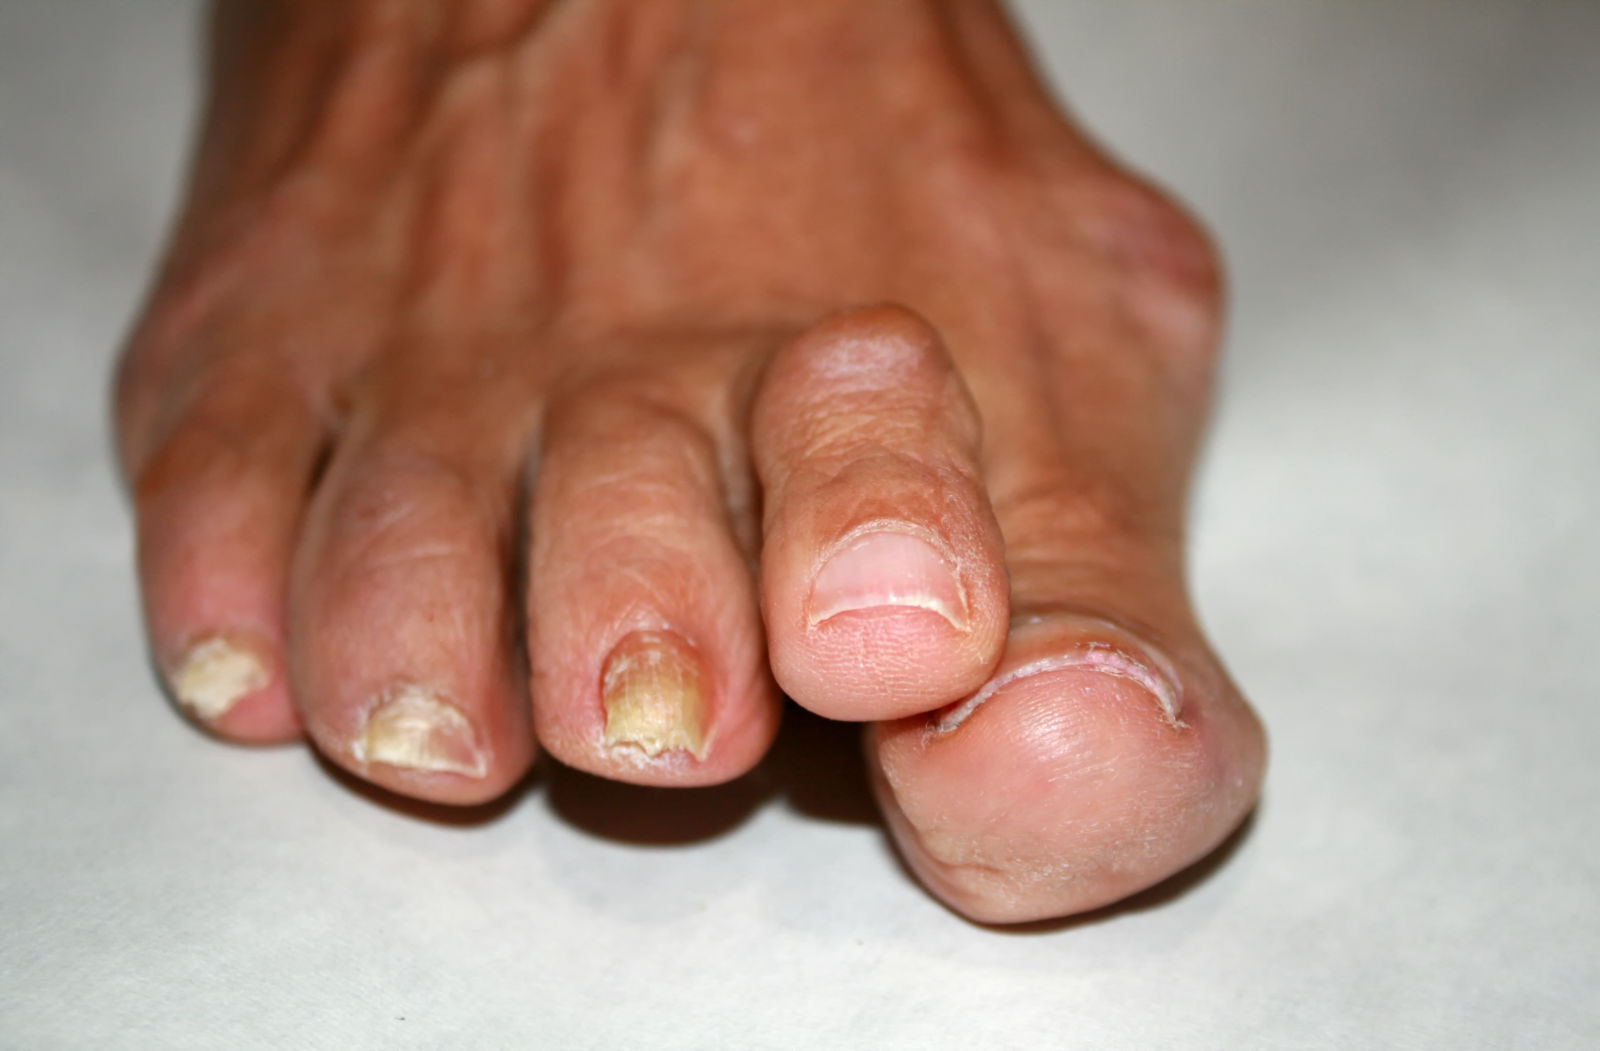 Reumatische voeten